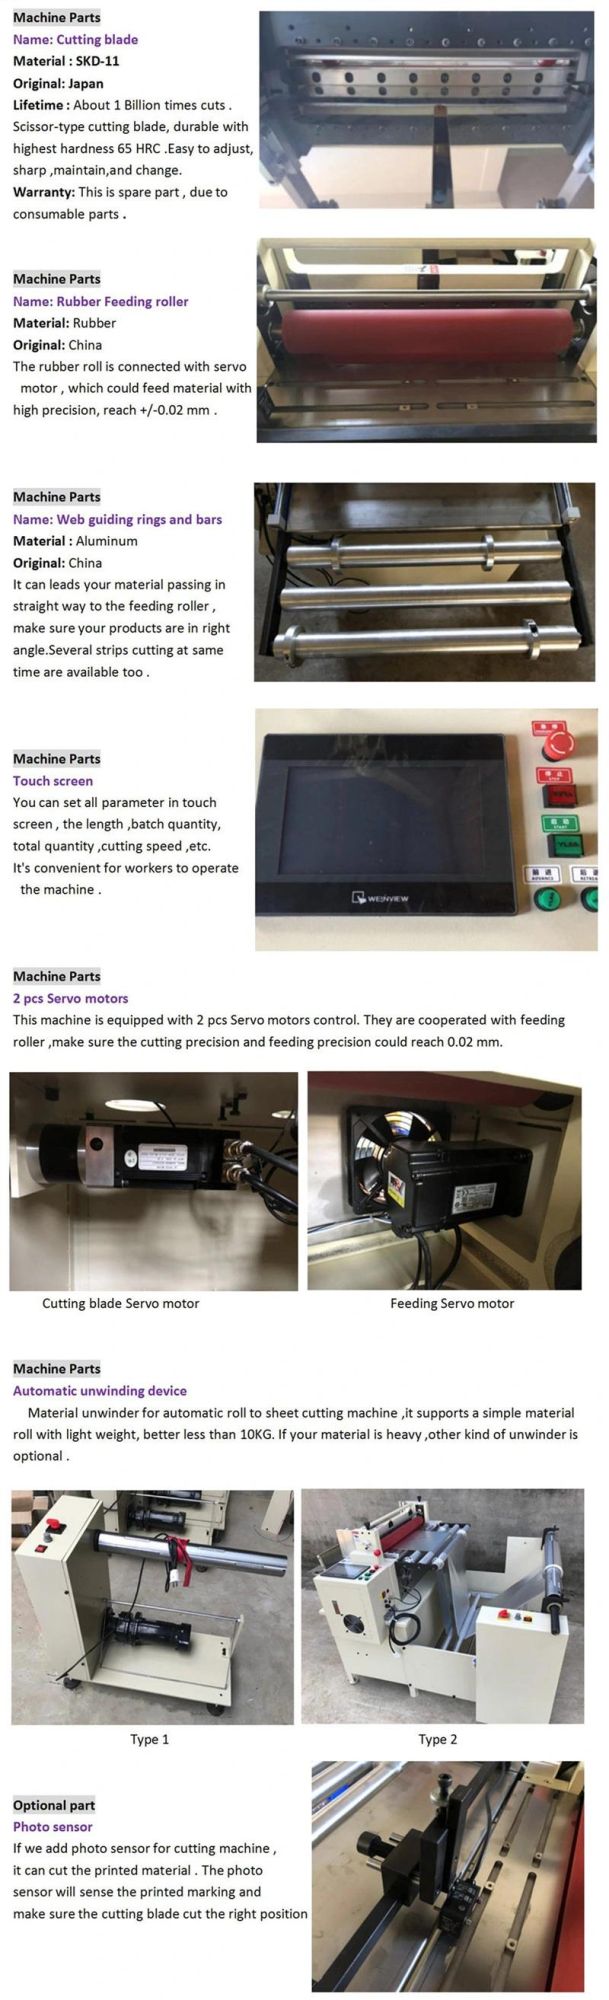 Automatic Art Paper Sheeting Machine